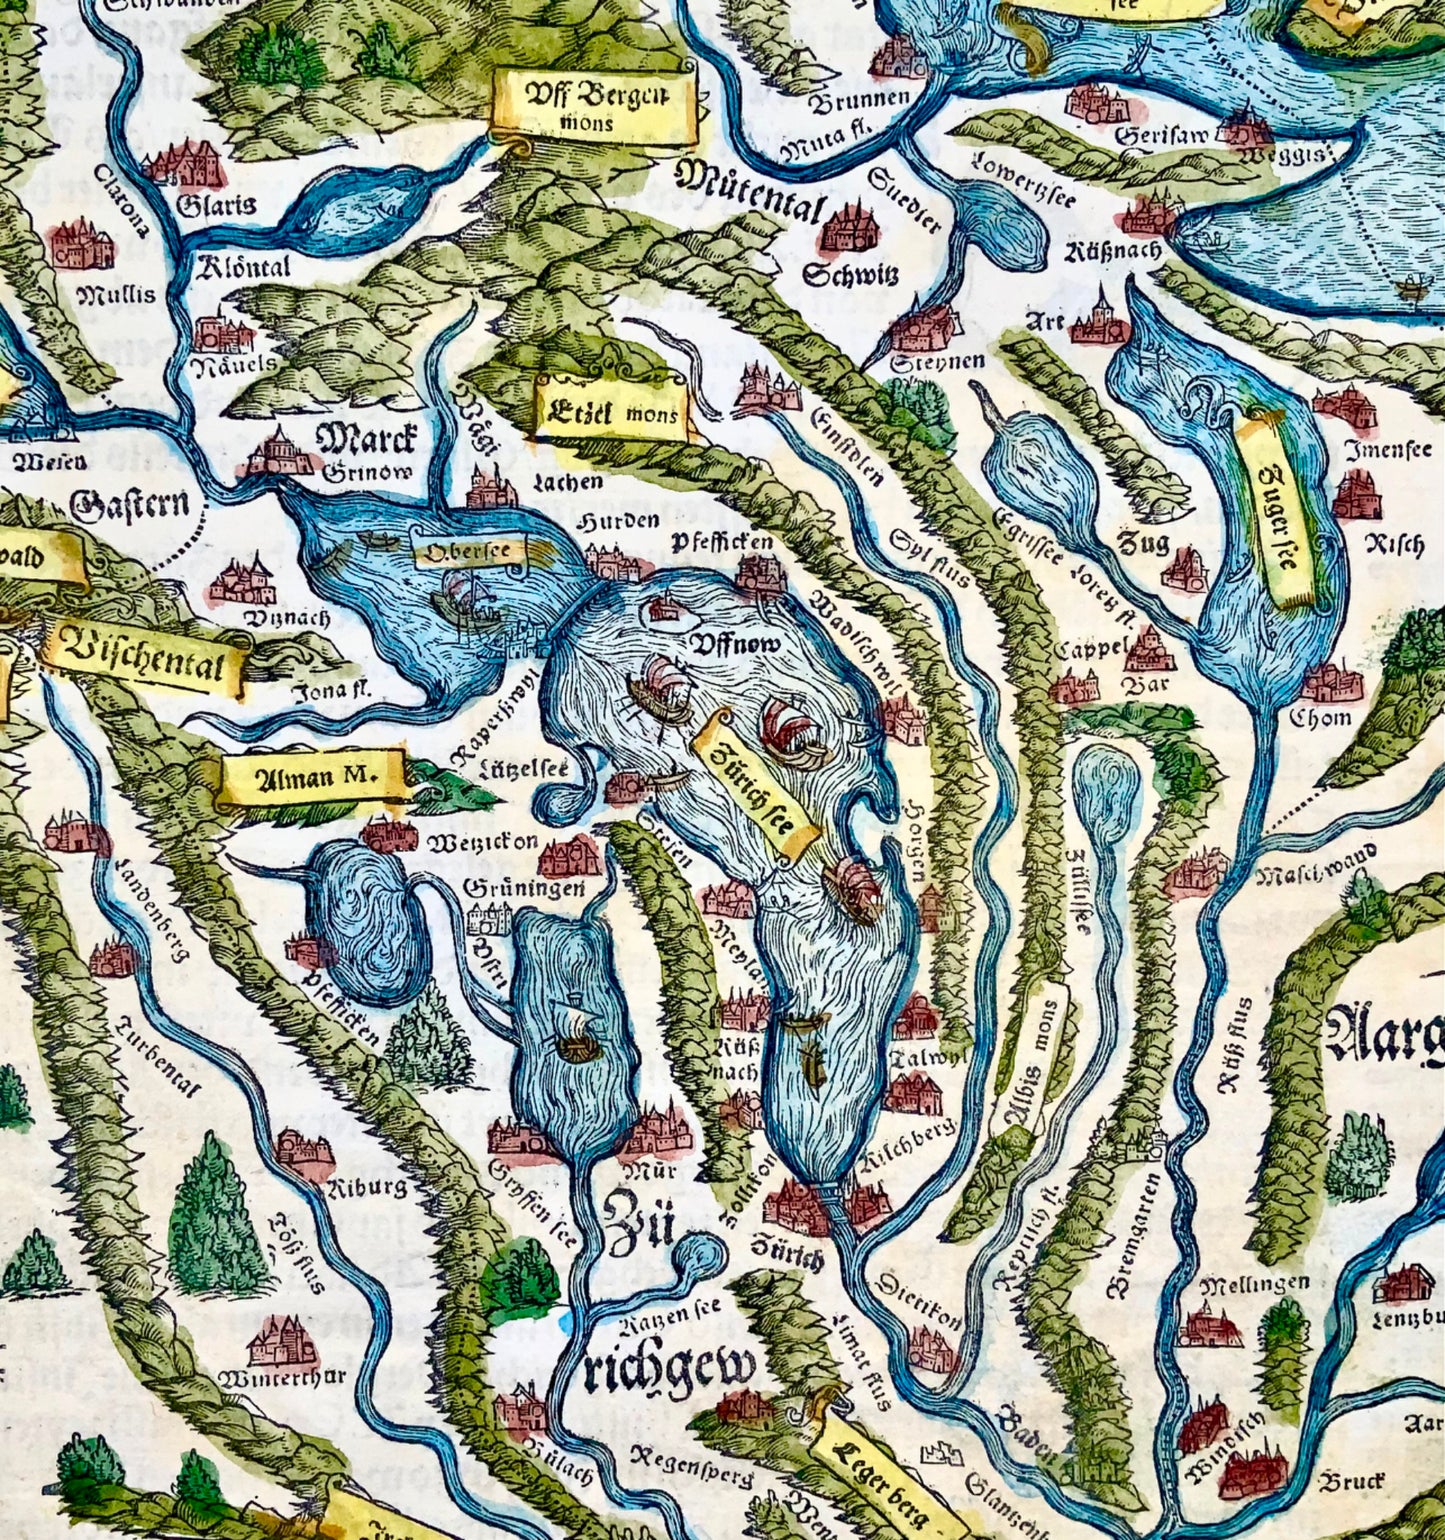 1548 Joh. Stumpf, Zurich, Lucerne, Zug, Switzerland folio woodcut map